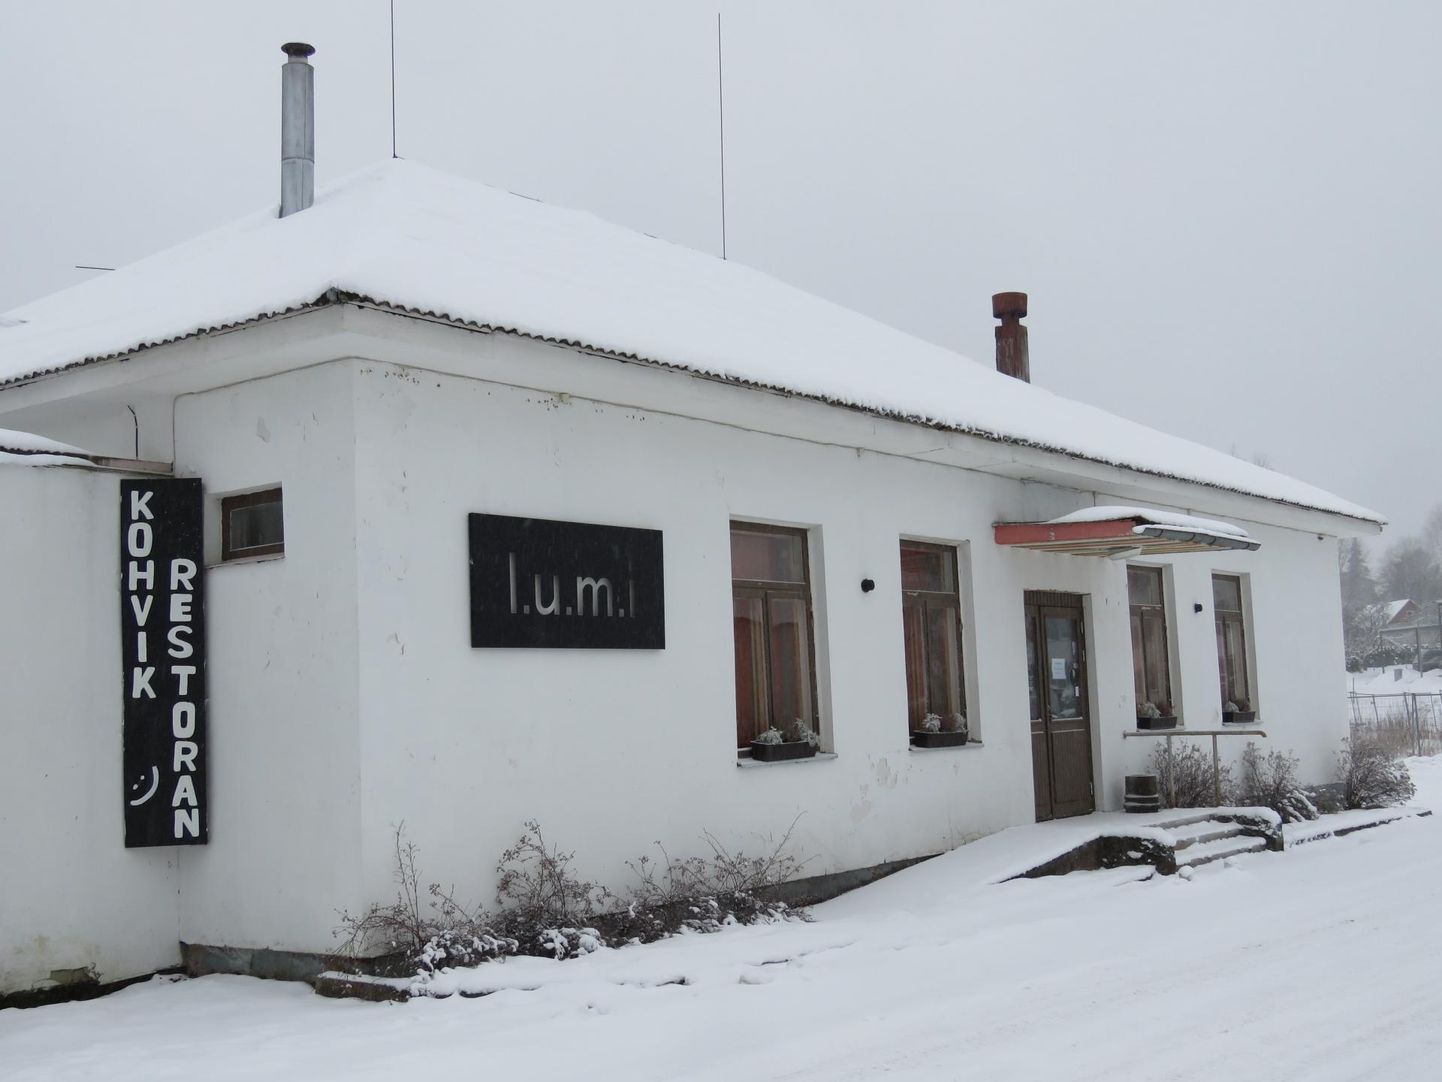 Pilt on tehtud kaks aastat tagasi detsembris, kui lumisel Otepääl oli kohvik-restoran l.u.m.i uksed kinni pannud.